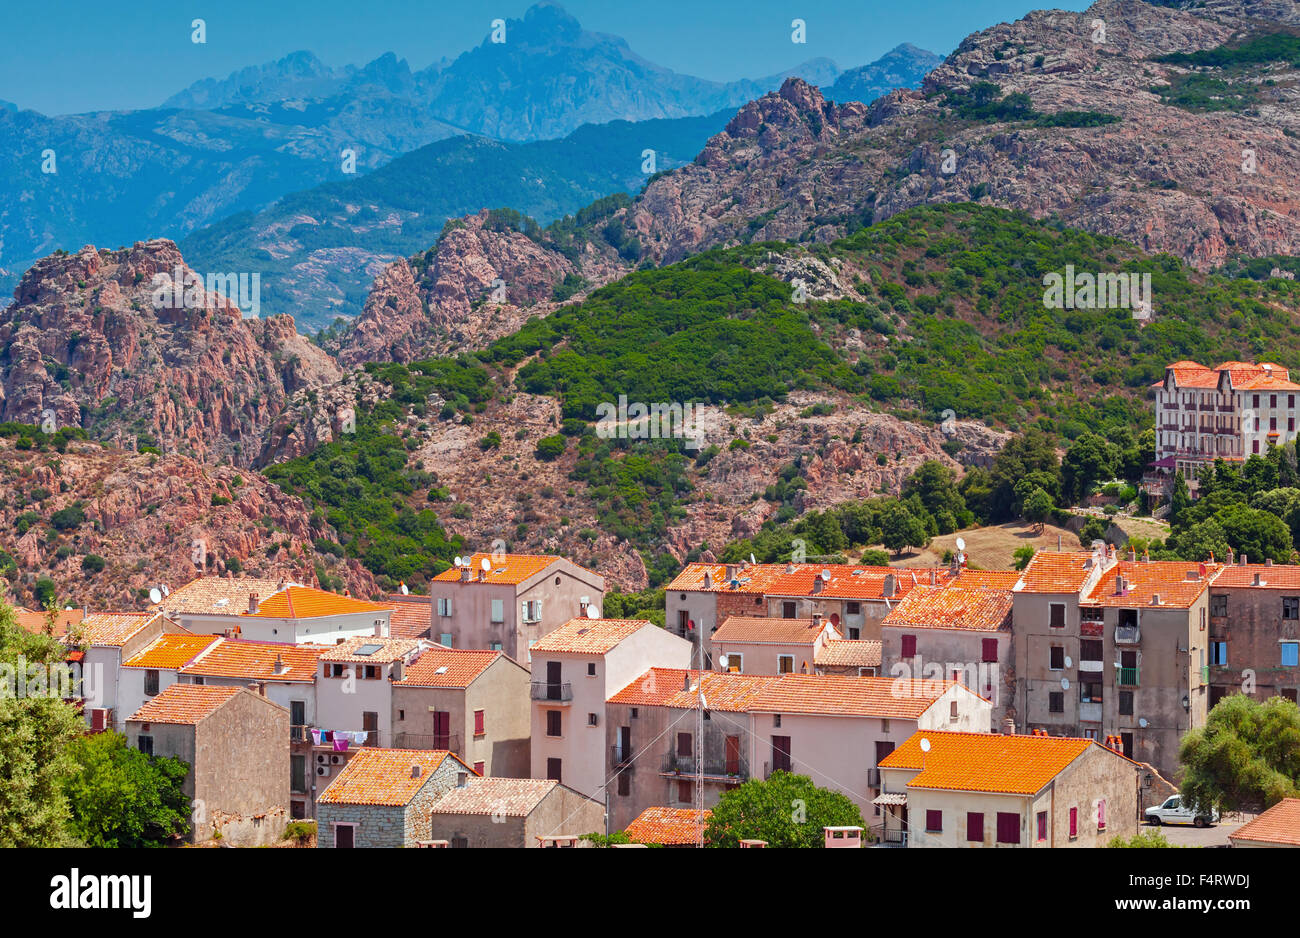 Villaggio Corso cityscape, vecchie case di pietra con tetti in tegole rosse sulle montagne sullo sfondo. Piana, Sud Corsica, Francia Foto Stock